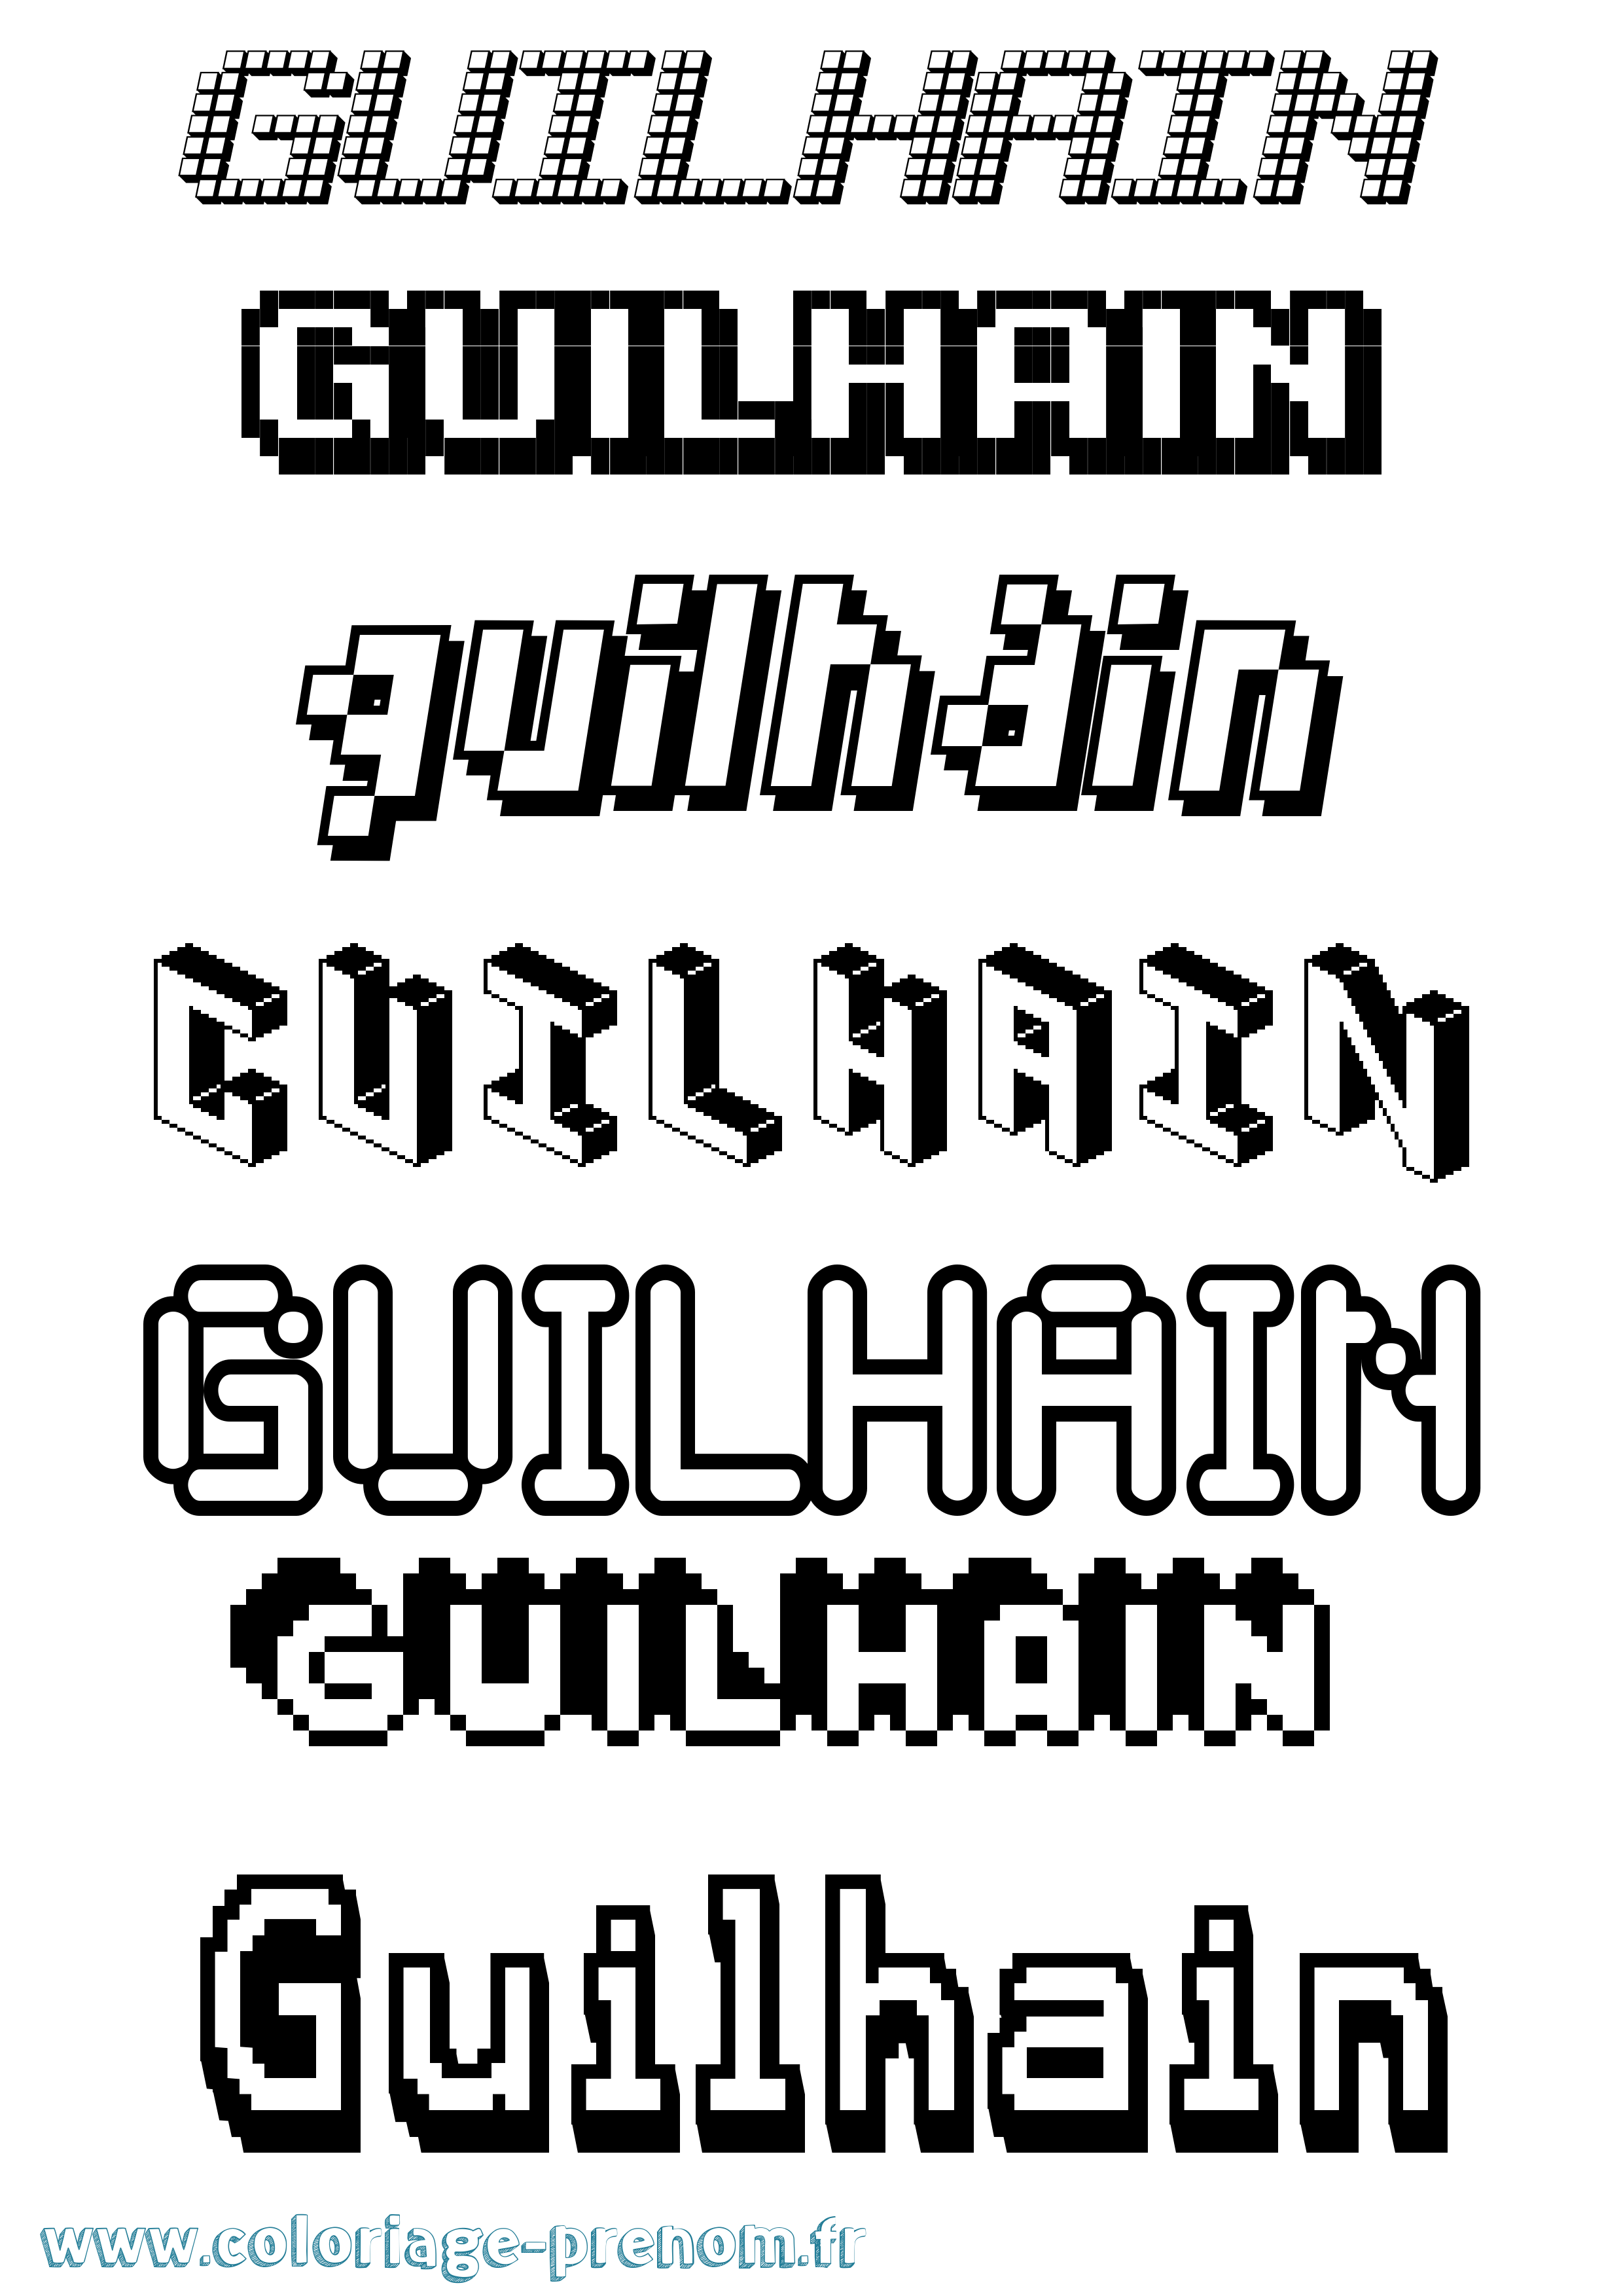 Coloriage prénom Guilhain Pixel